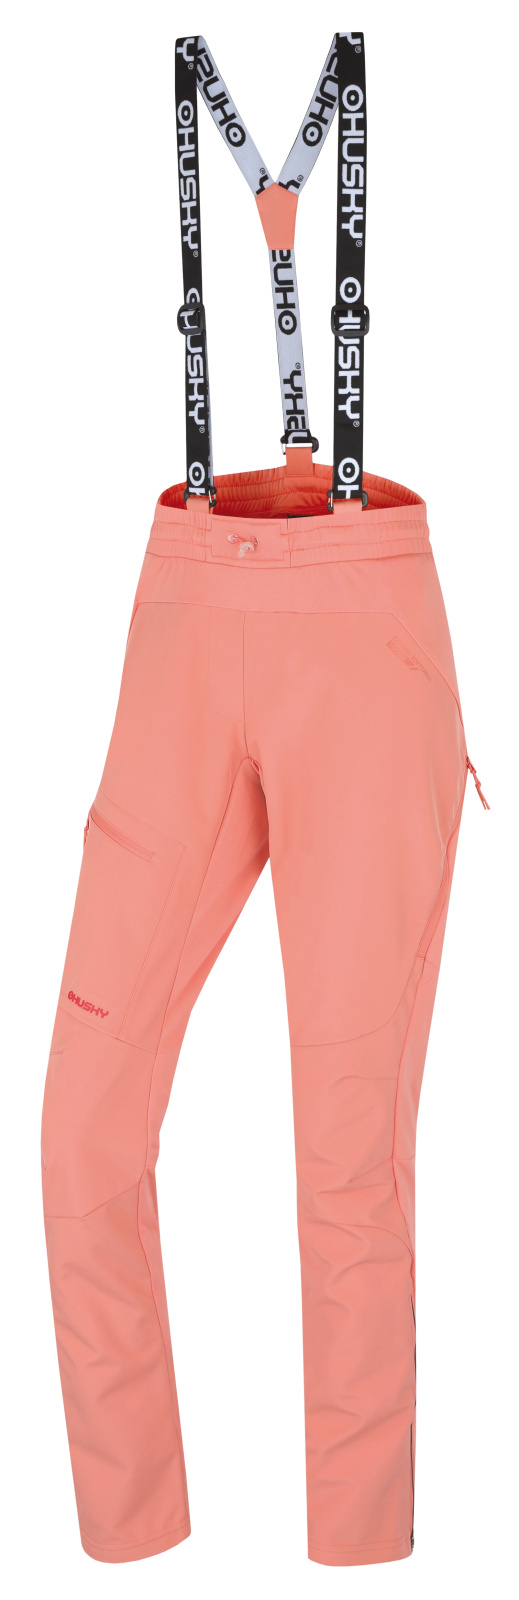 Women's outdoor pants HUSKY Kixees L light orange